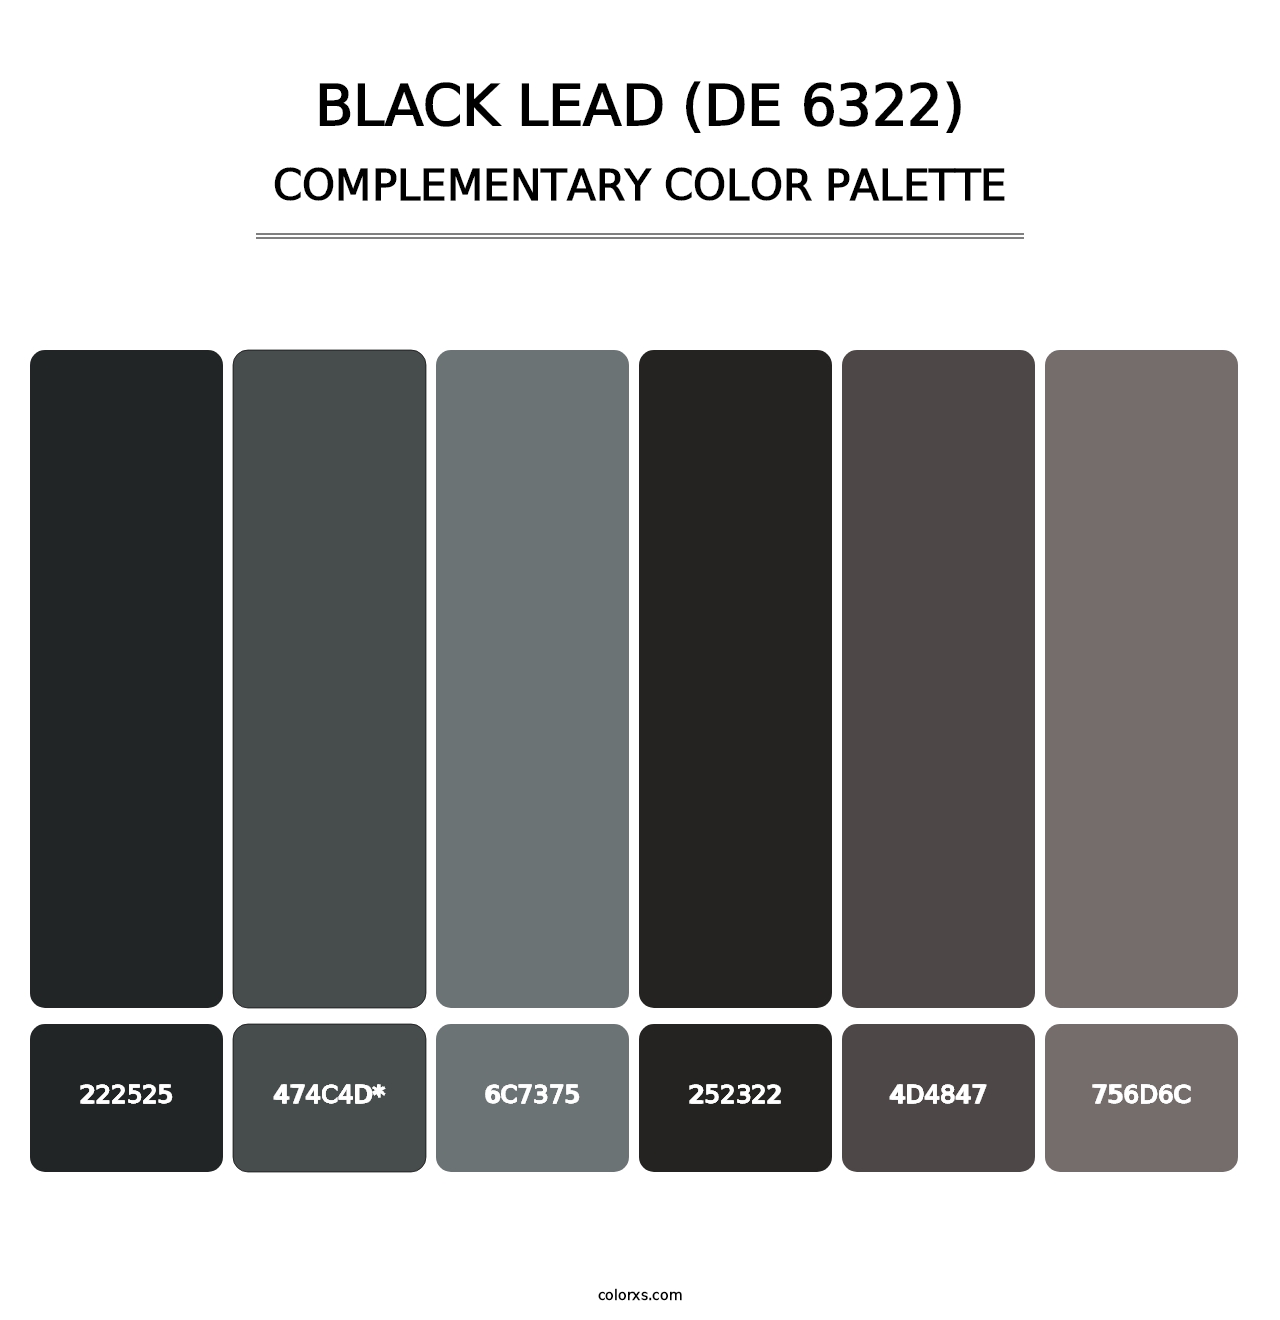 Black Lead (DE 6322) - Complementary Color Palette